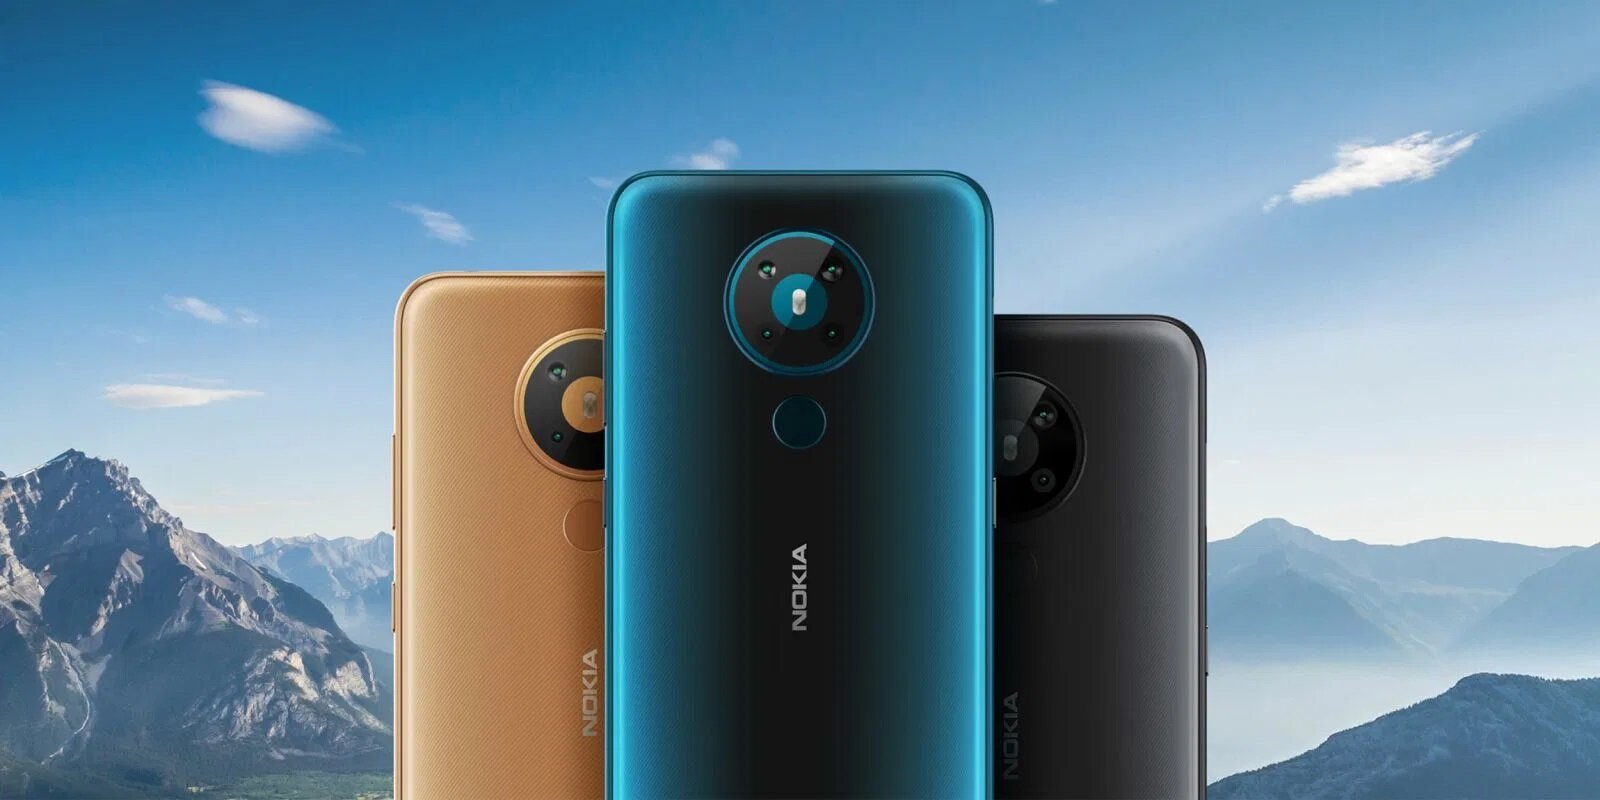 Νέα Nokia 5.3 και Nokia 1.3 στα €209 και €99 αντίστοιχα